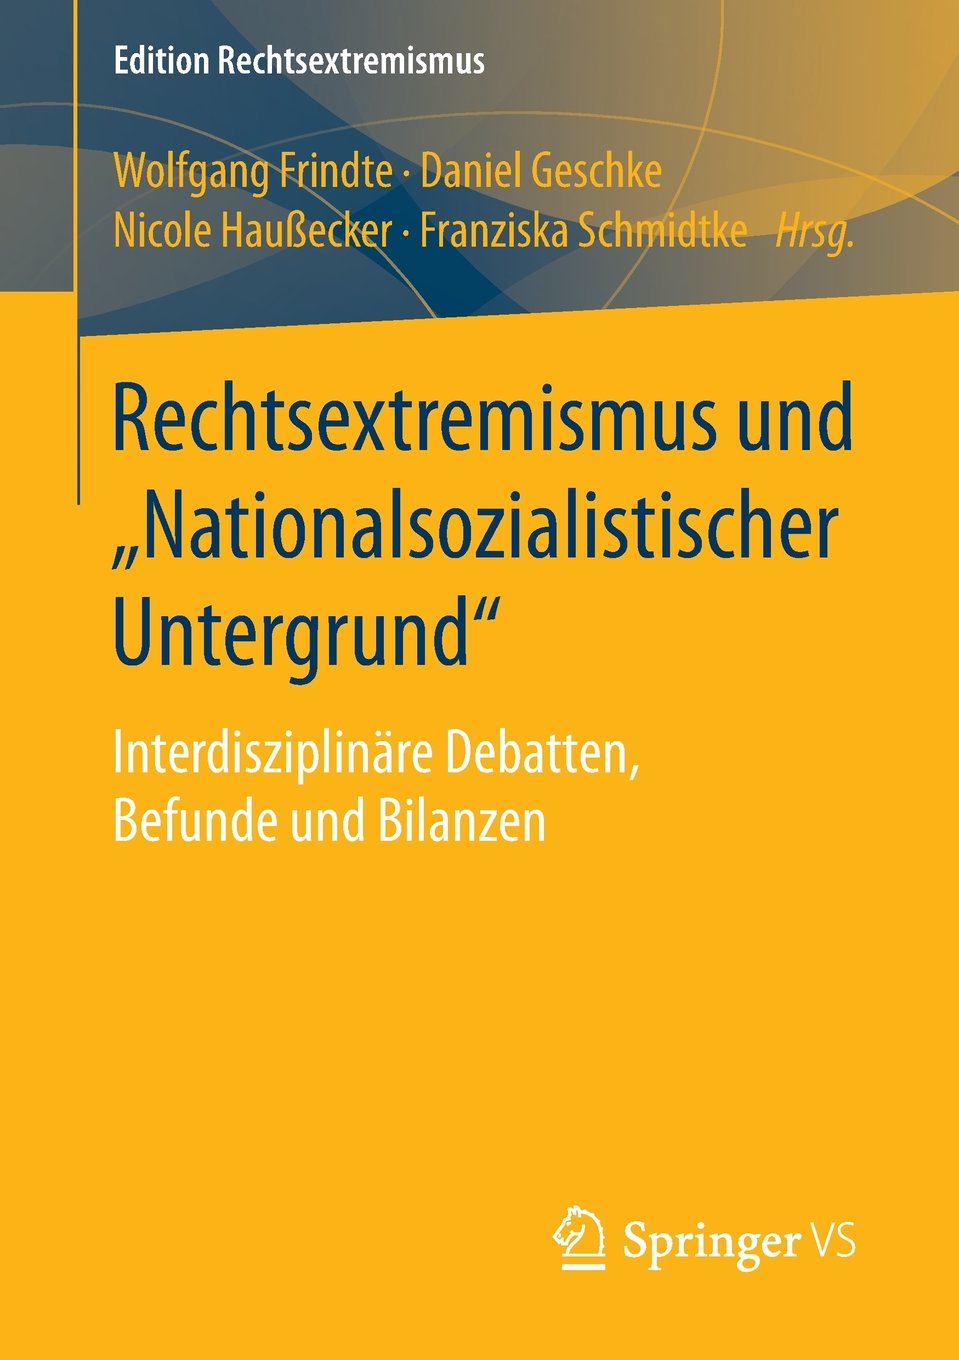 Rechtsextremismus und "Nationalsozialistischer Untergrund". Interdisziplinäre Debatten, Befunde und Bilanzen. Hrsg. v. Wolfgang Frindte u.a.